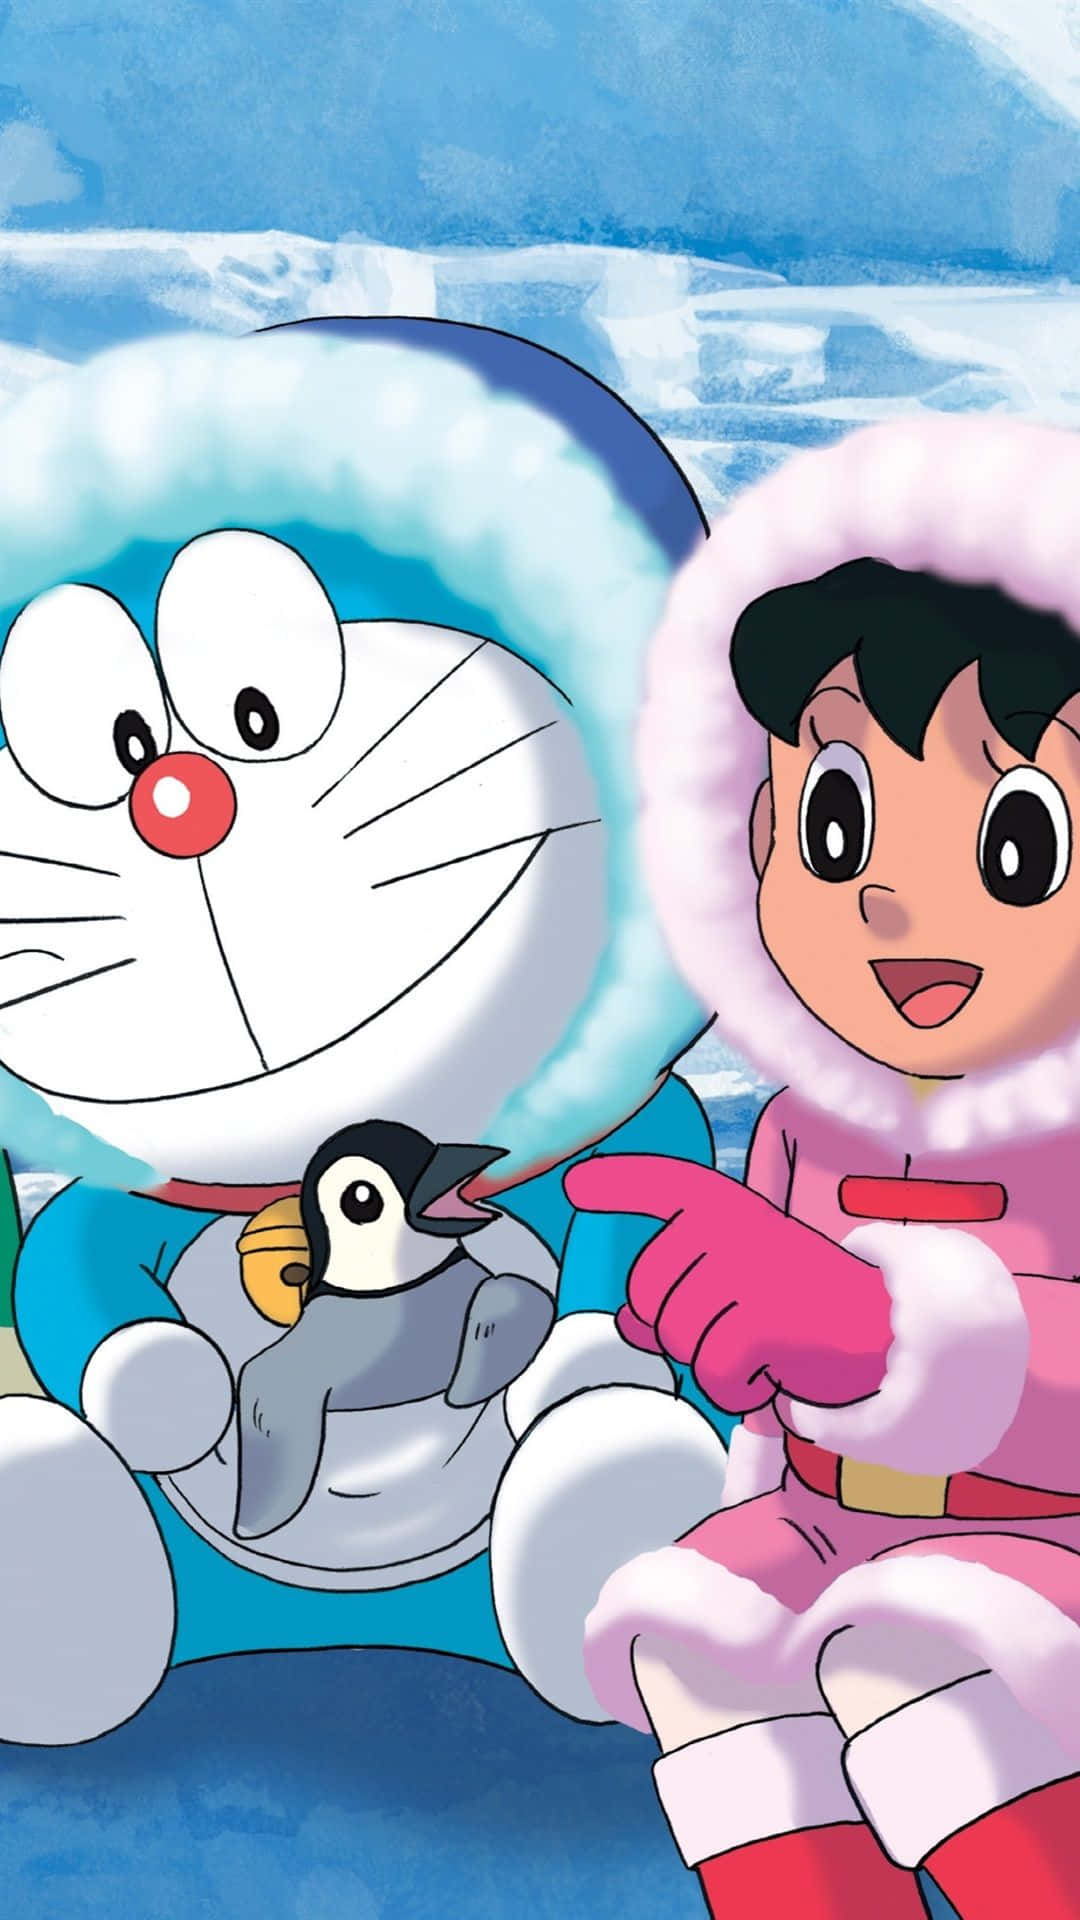 Caption: Friendship Exploration With Doraemon